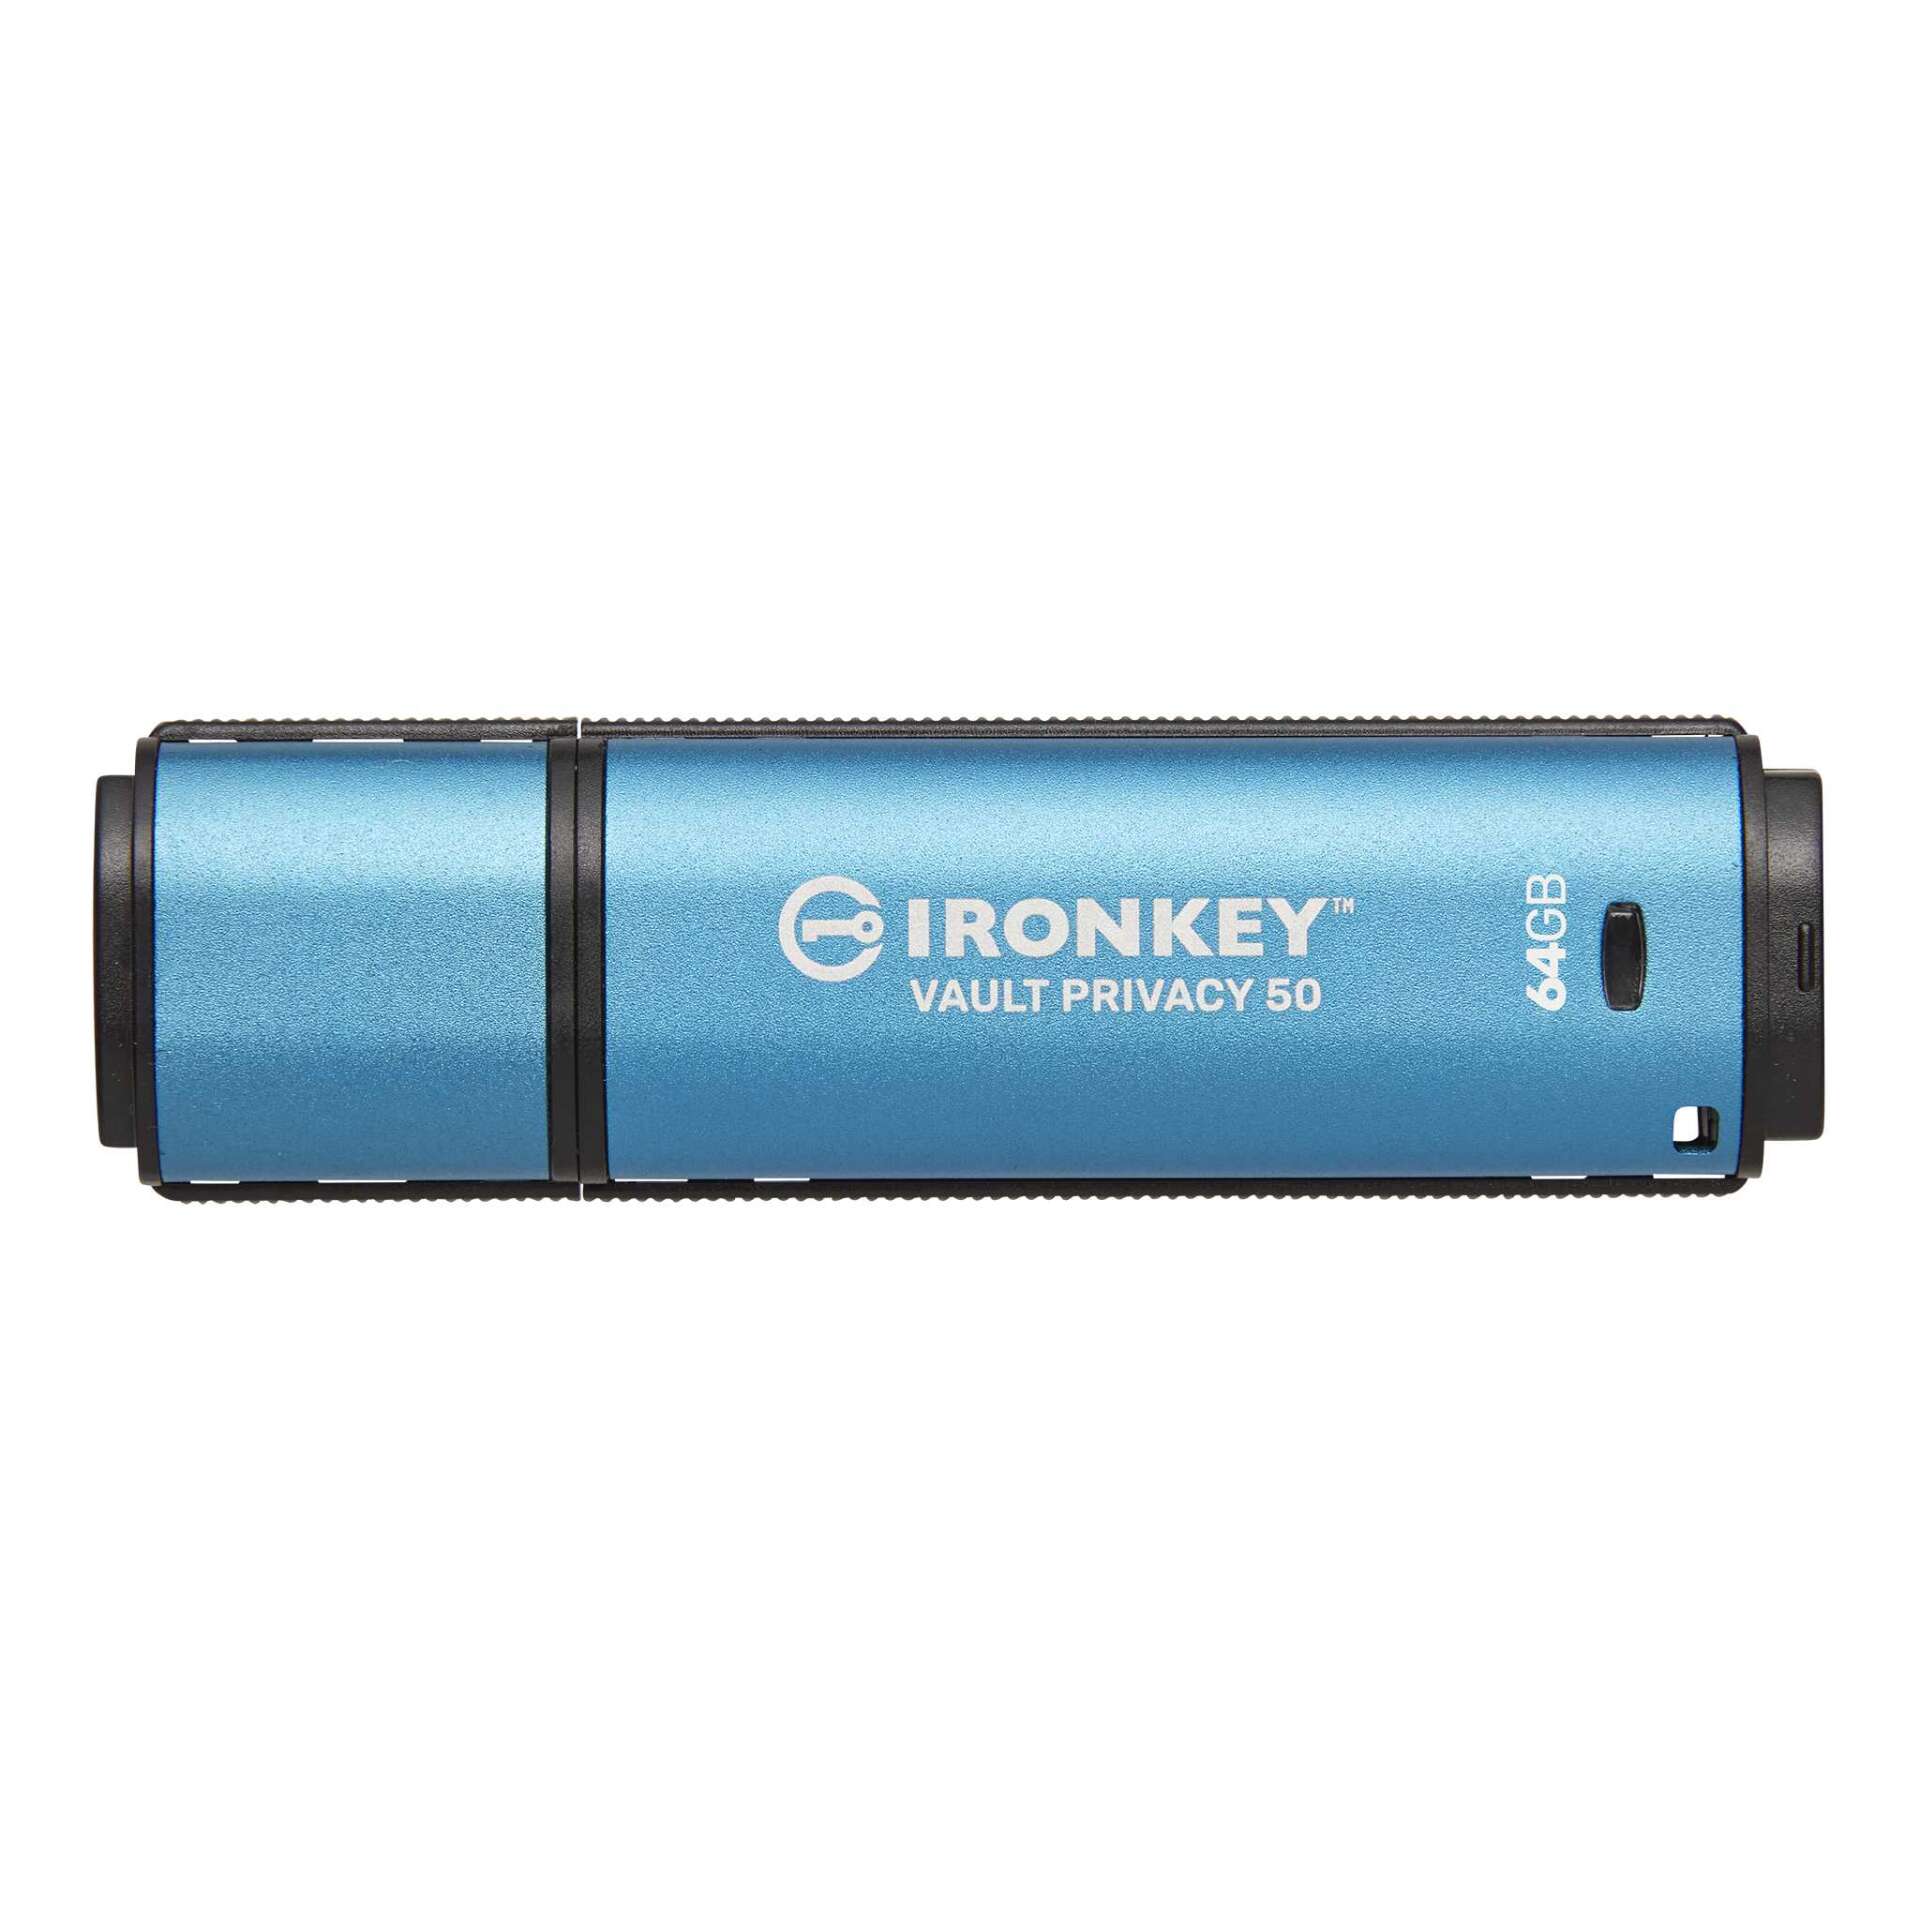 Kingston 64gb ironkey vault privacy 50 usb 3.0 pendrive - kék